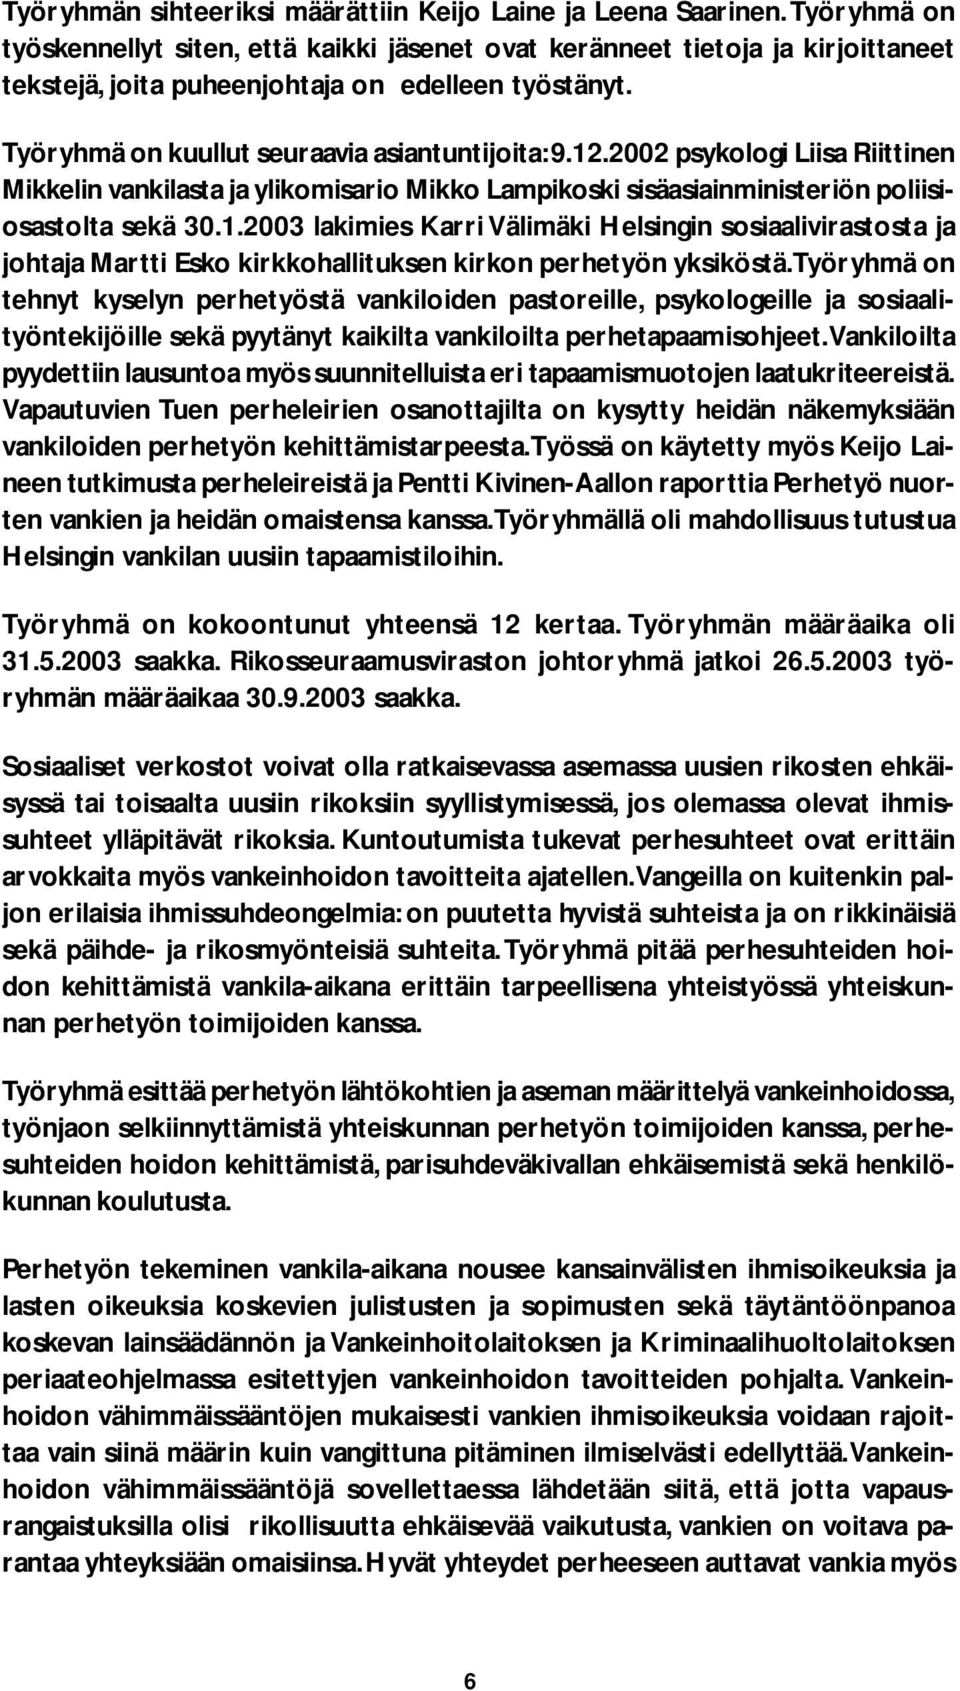 2002 psykologi Liisa Riittinen Mikkelin vankilasta ja ylikomisario Mikko Lampikoski sisäasiainministeriön poliisiosastolta sekä 30.1.